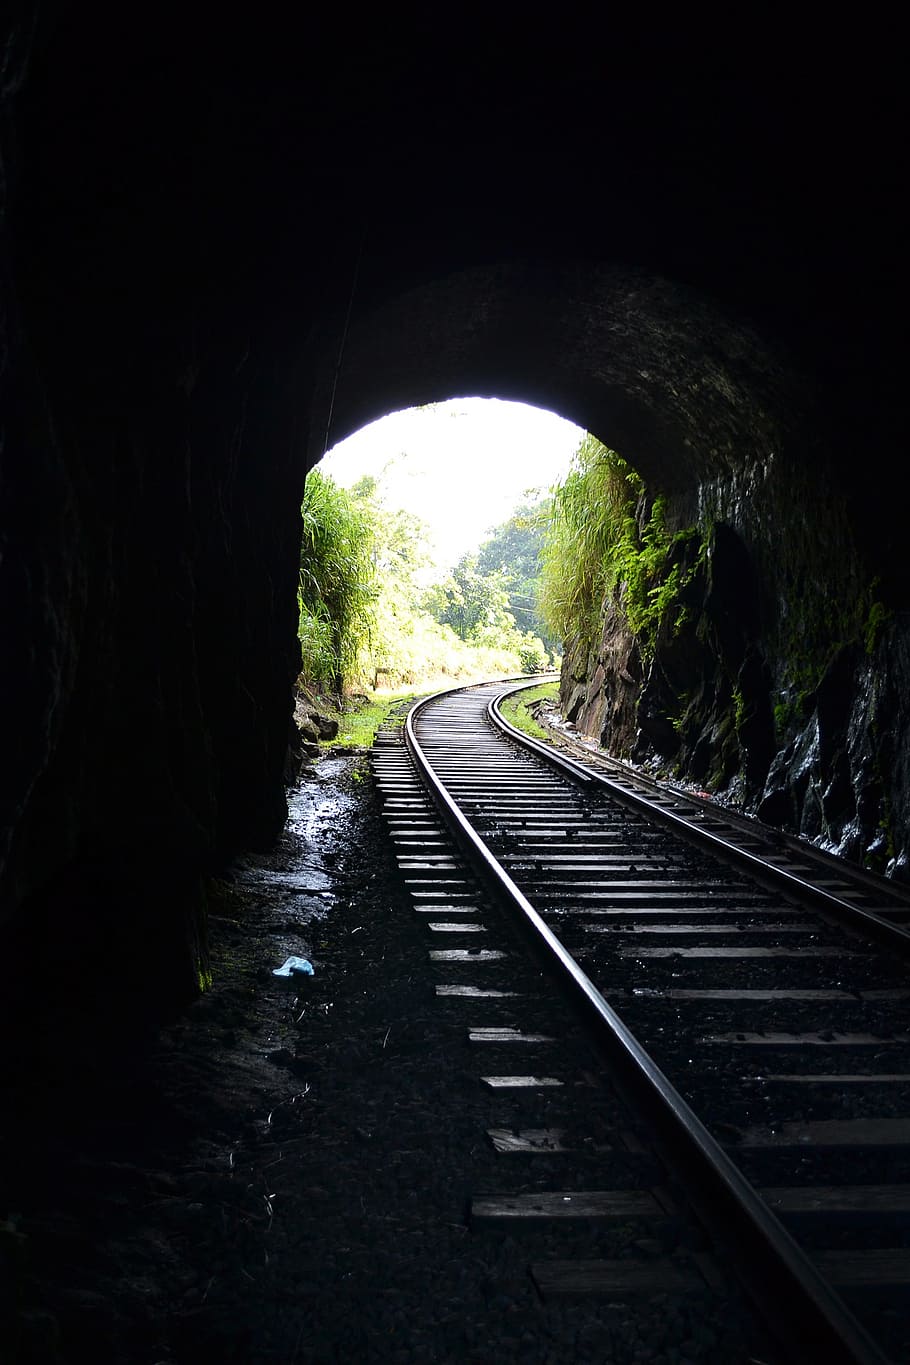 鉄道レール, トンネル, 鉄道, 光, 光が通り抜ける, 太陽が沈む, レール, 電車, 輸送, 暗い